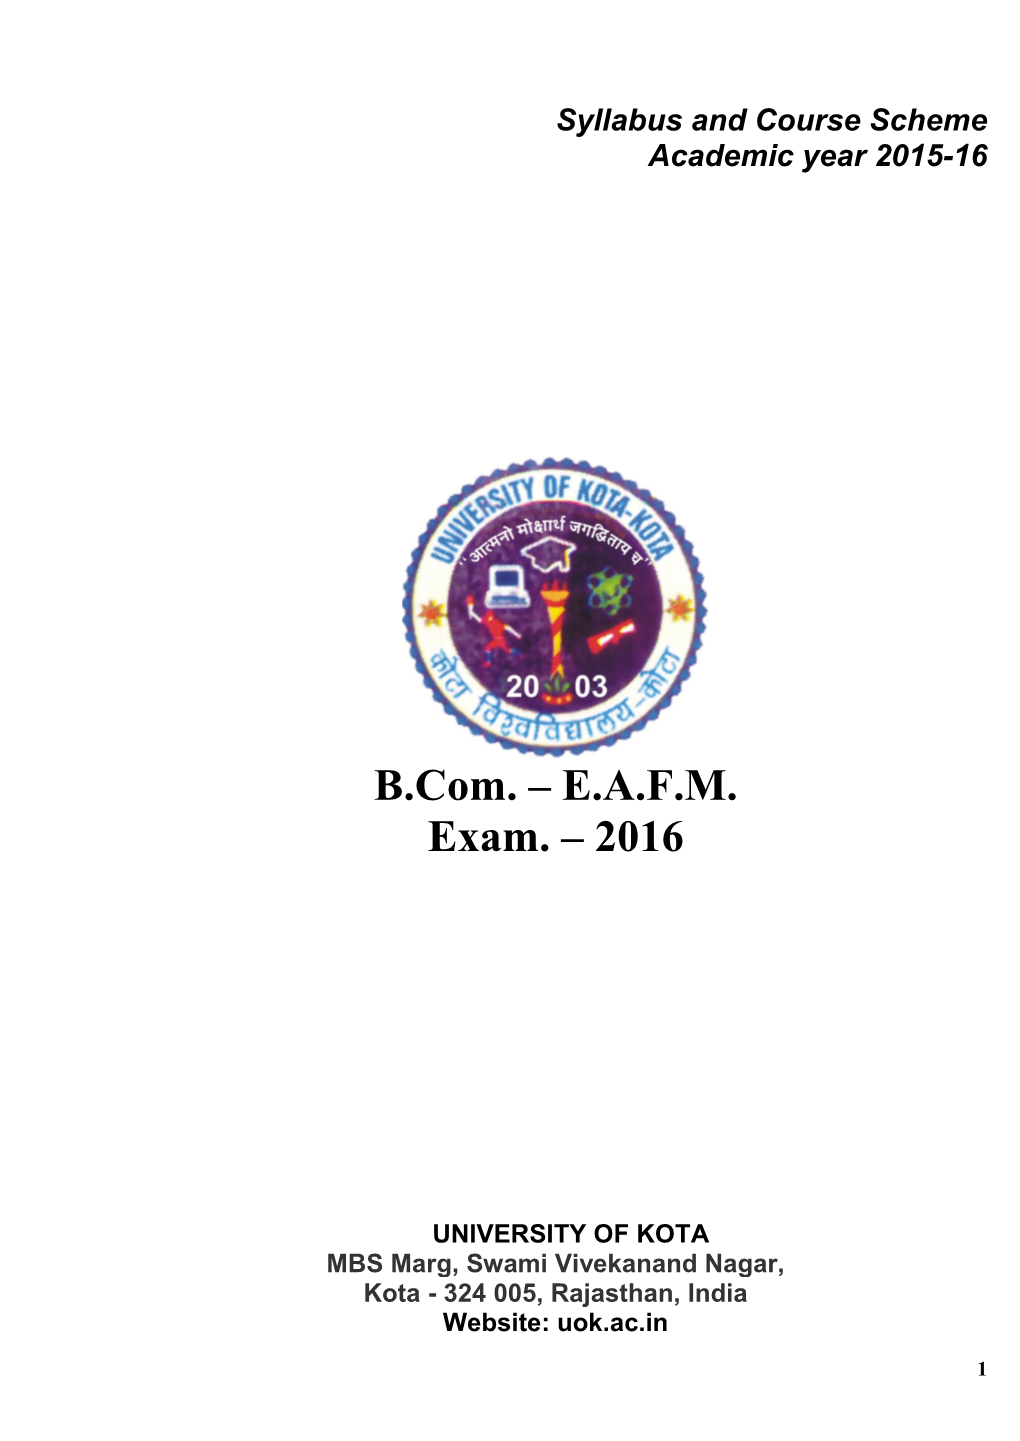 B.Com. – E.A.F.M. Exam. – 2016